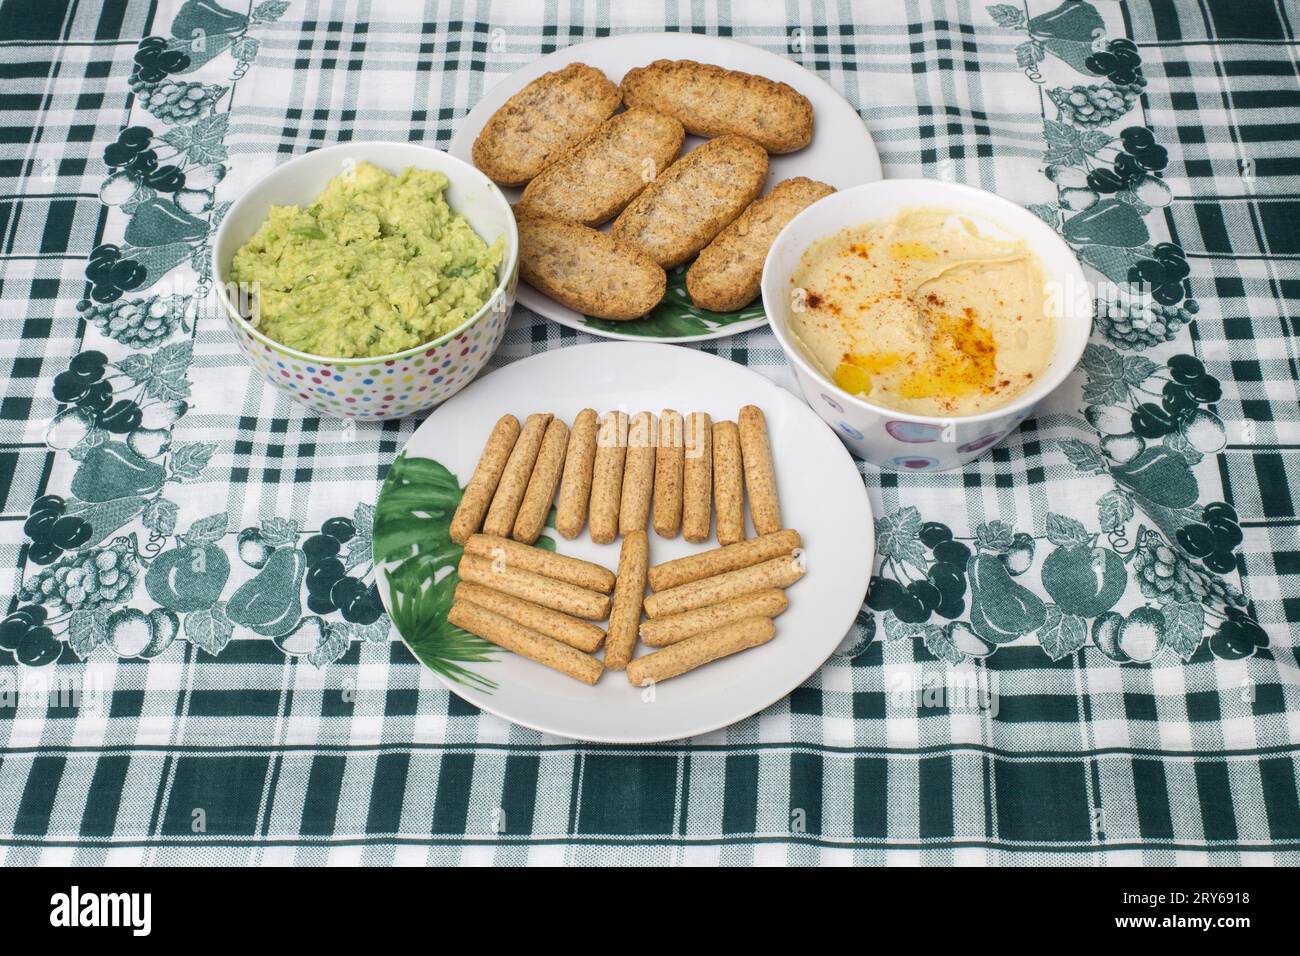 Due ciotole di hummus cremoso e salsa guacamole sono poste su un tavolo con una tovaglia a foglia e geometrica, insieme a toast di grano intero e grissini Foto Stock